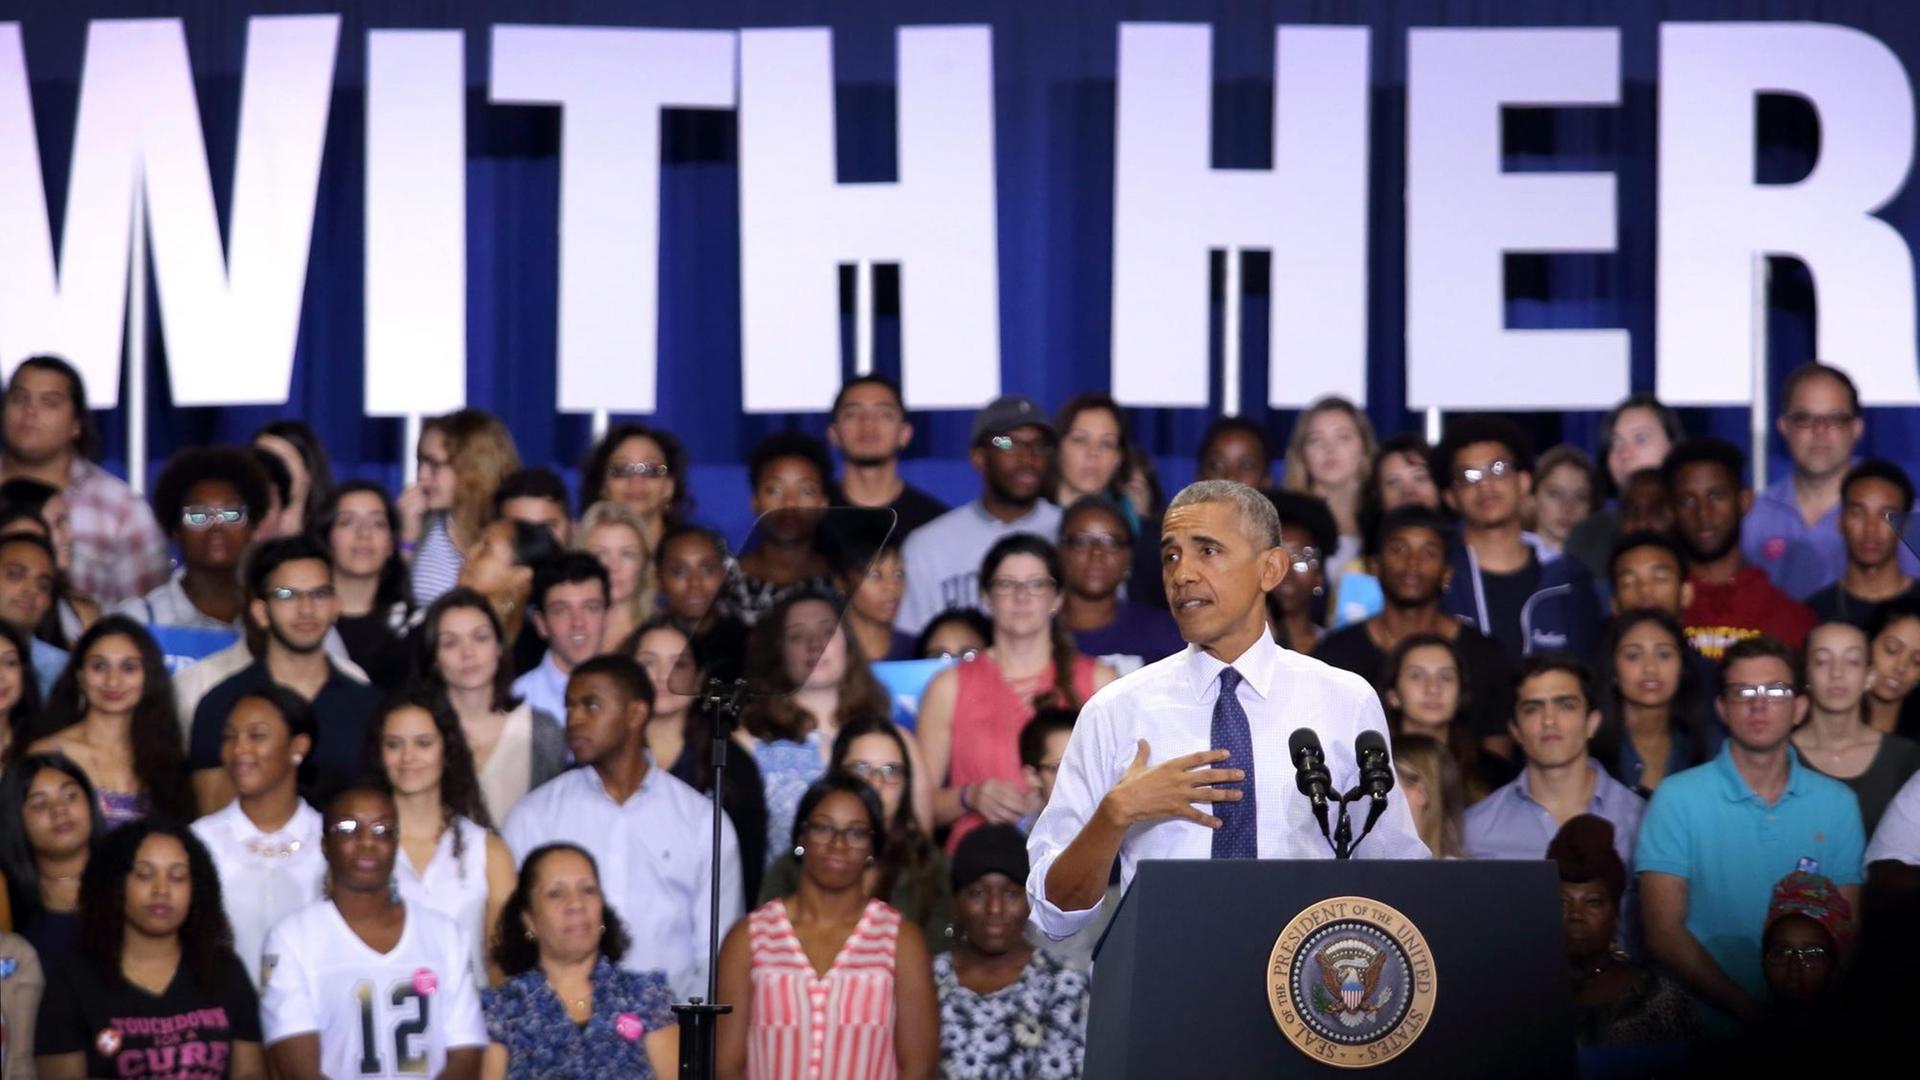 US-Präsident Barack Obama bei einem Auftritt am 3. November 2016 an der Internationalen Universität von Miami, Florida, zur Unterstützung der demokratischen Präsidentschaftskandidatin Hillary Clinton.